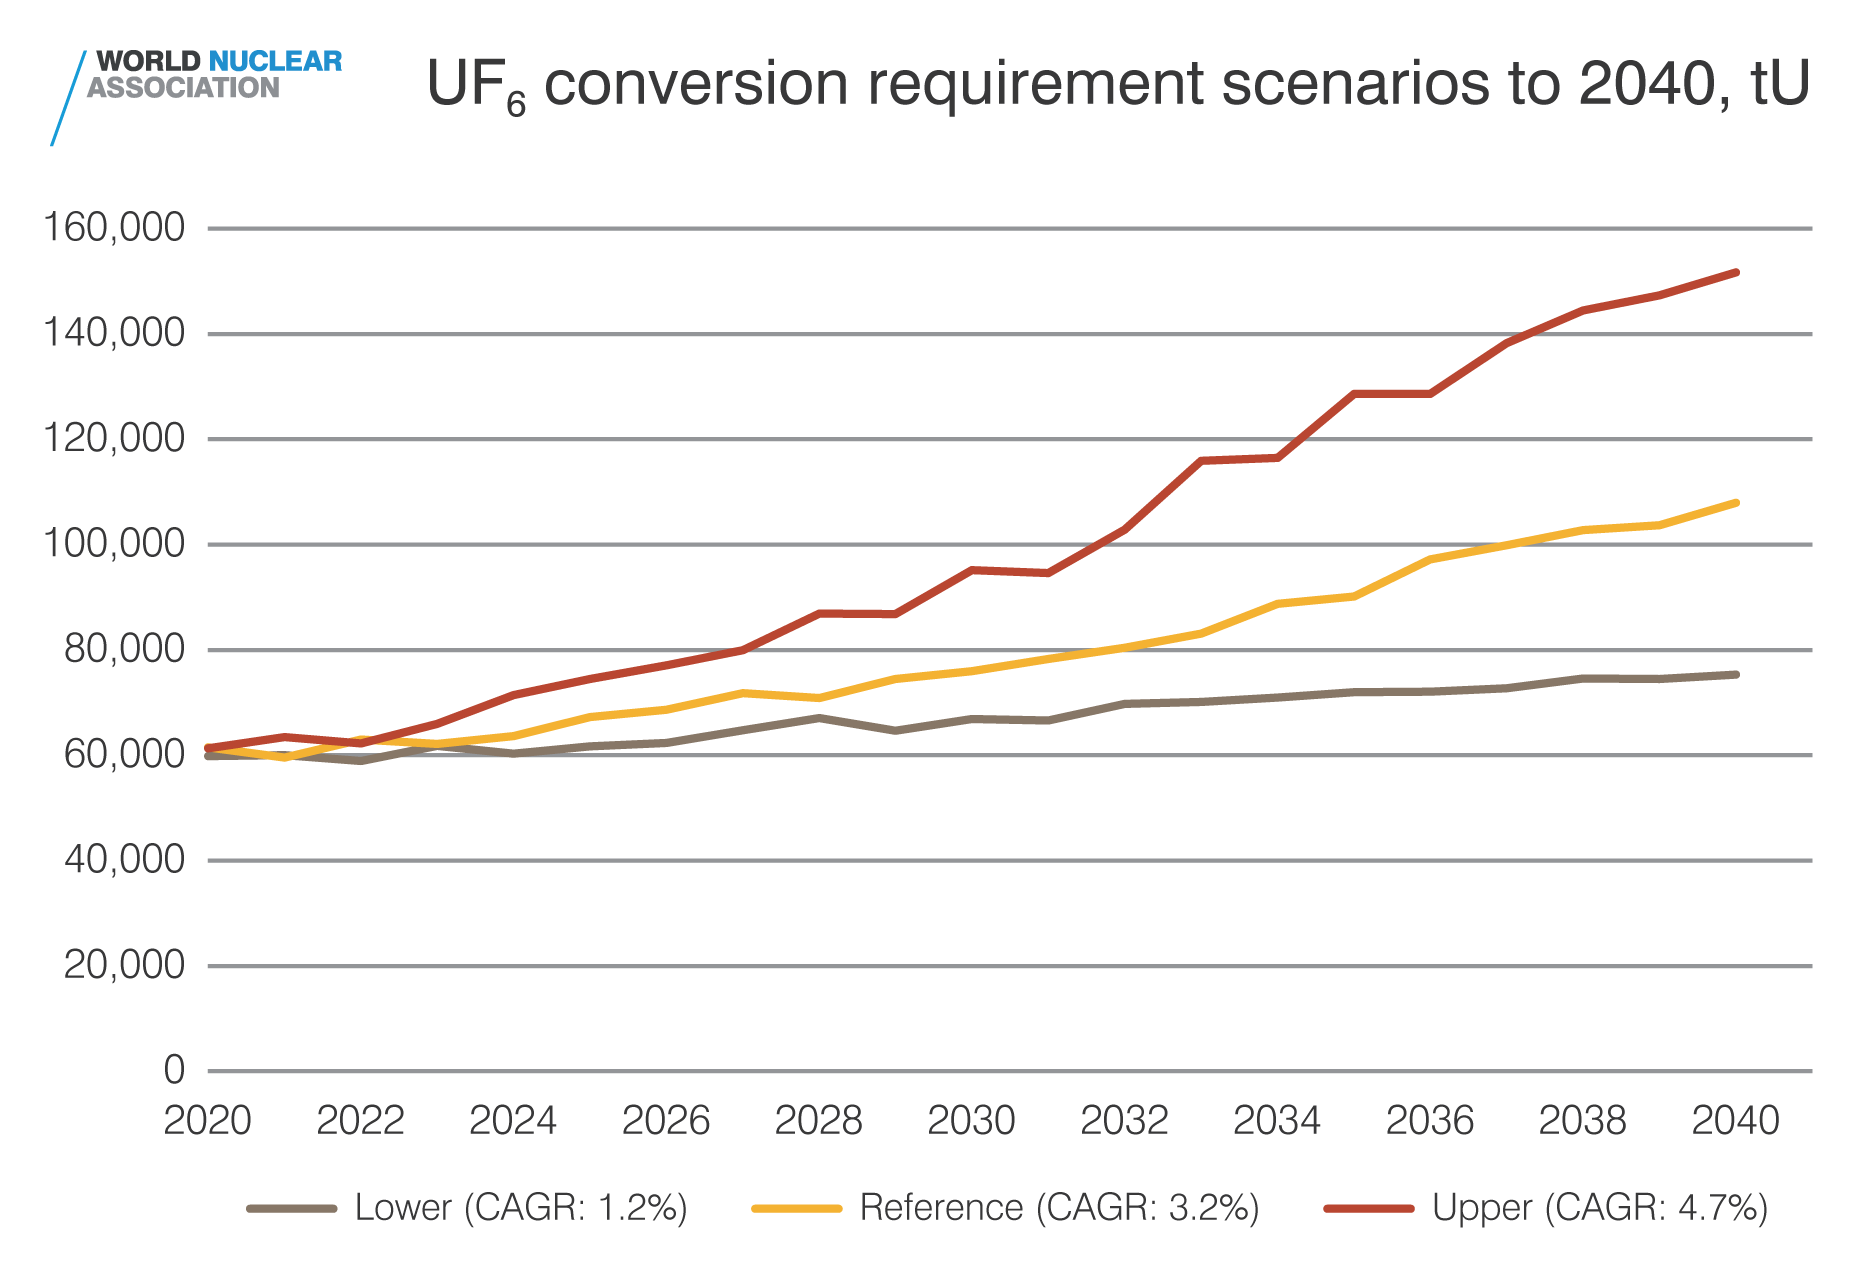 UF6 conversion requirements scenarios to 2040